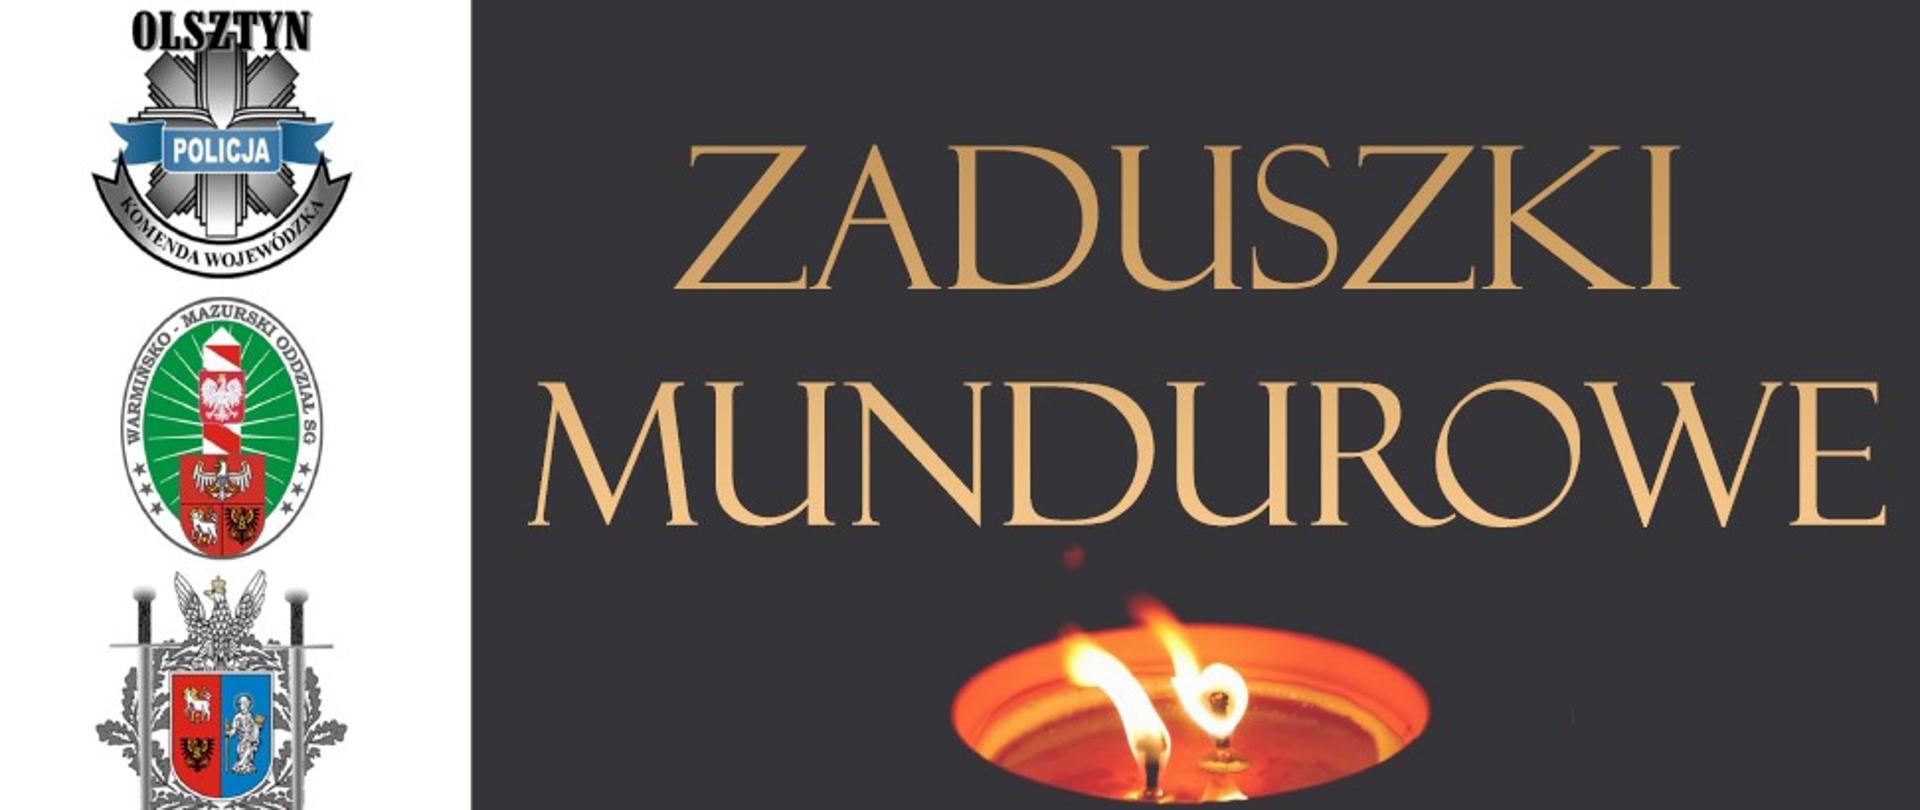 Zdjęcie plakatu Zaduszki Mundurowe 